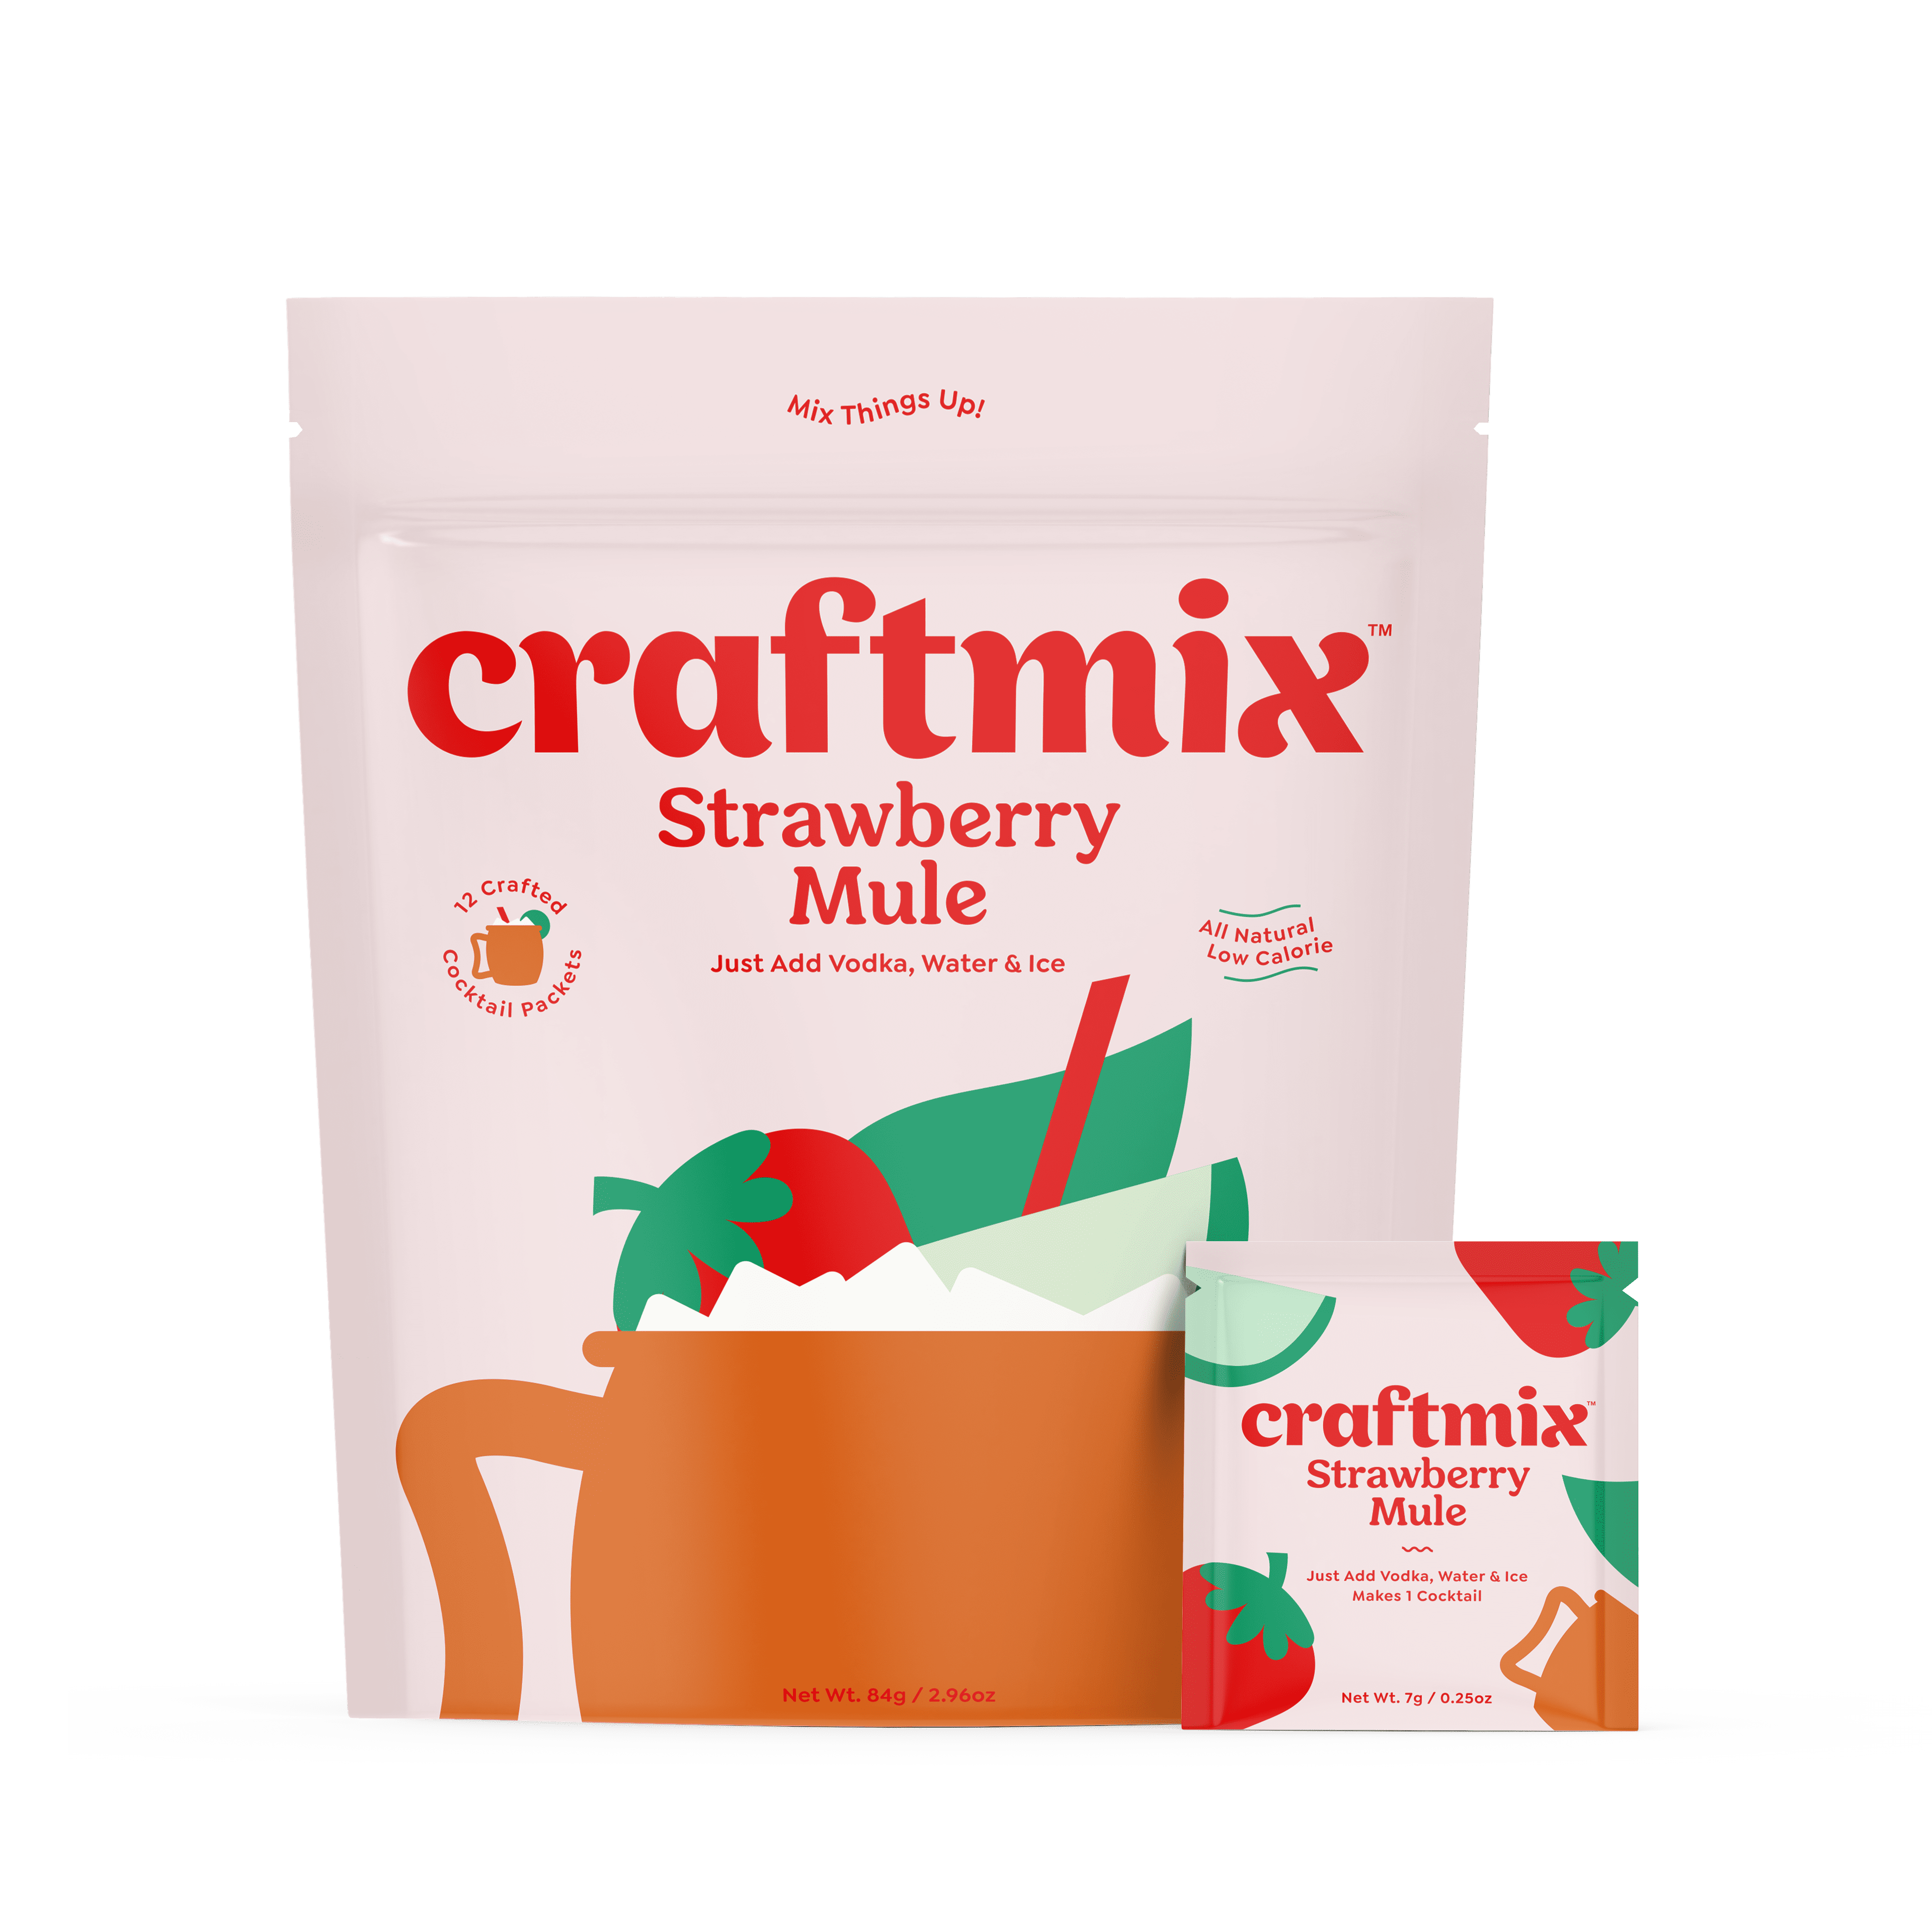 Craftmix Strawberry Mule 12 Pack 12 units per case 3.0 oz